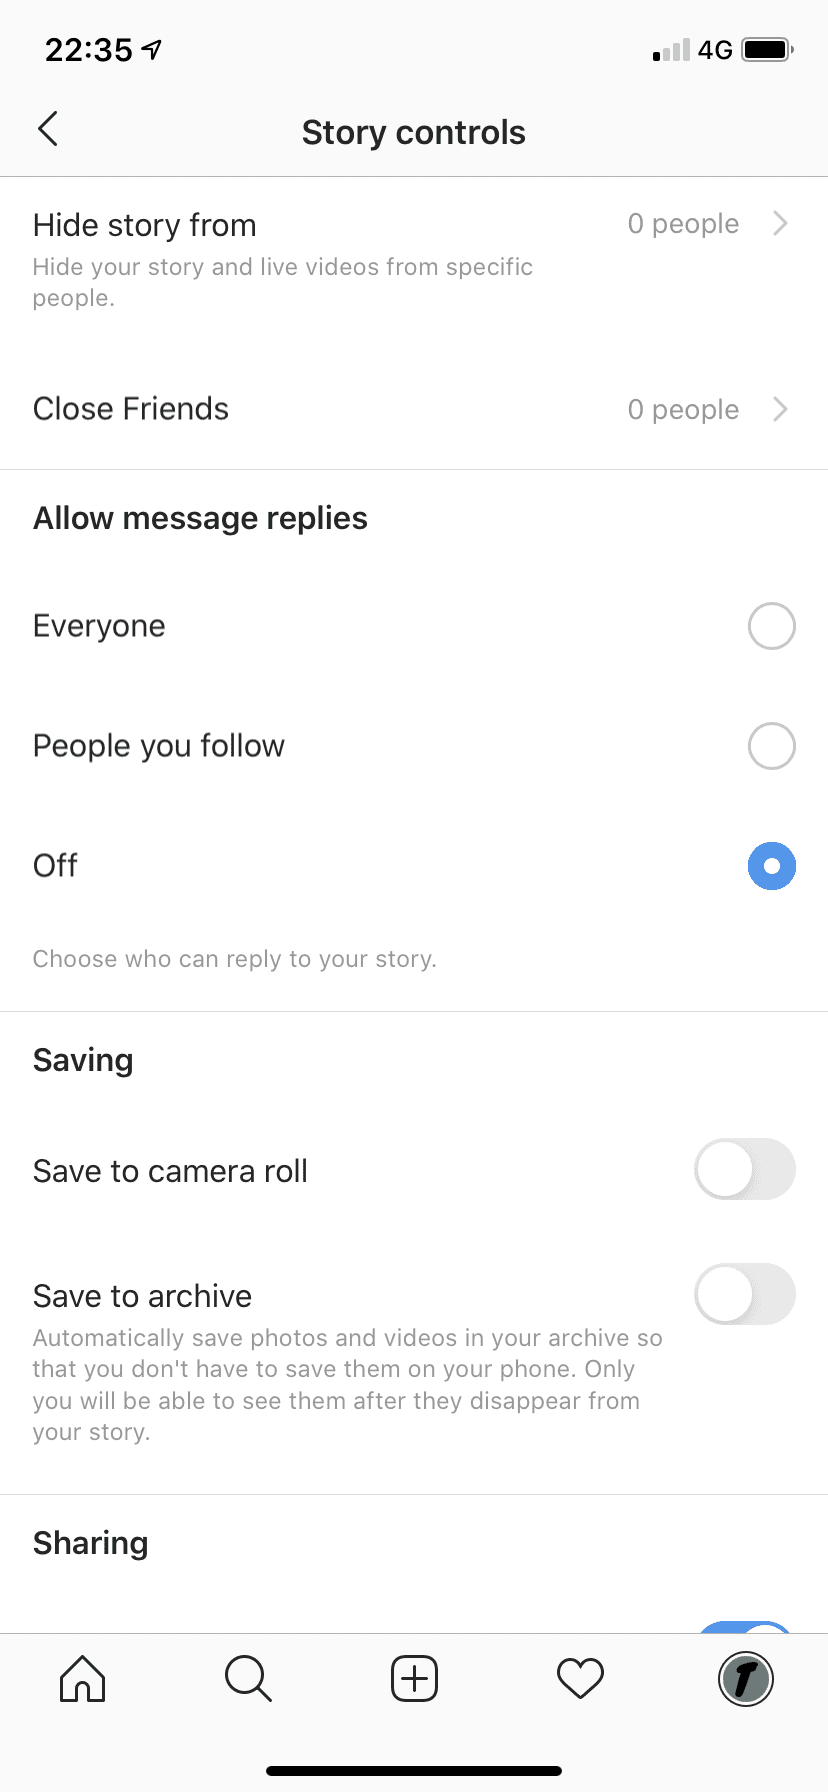 allow message replies